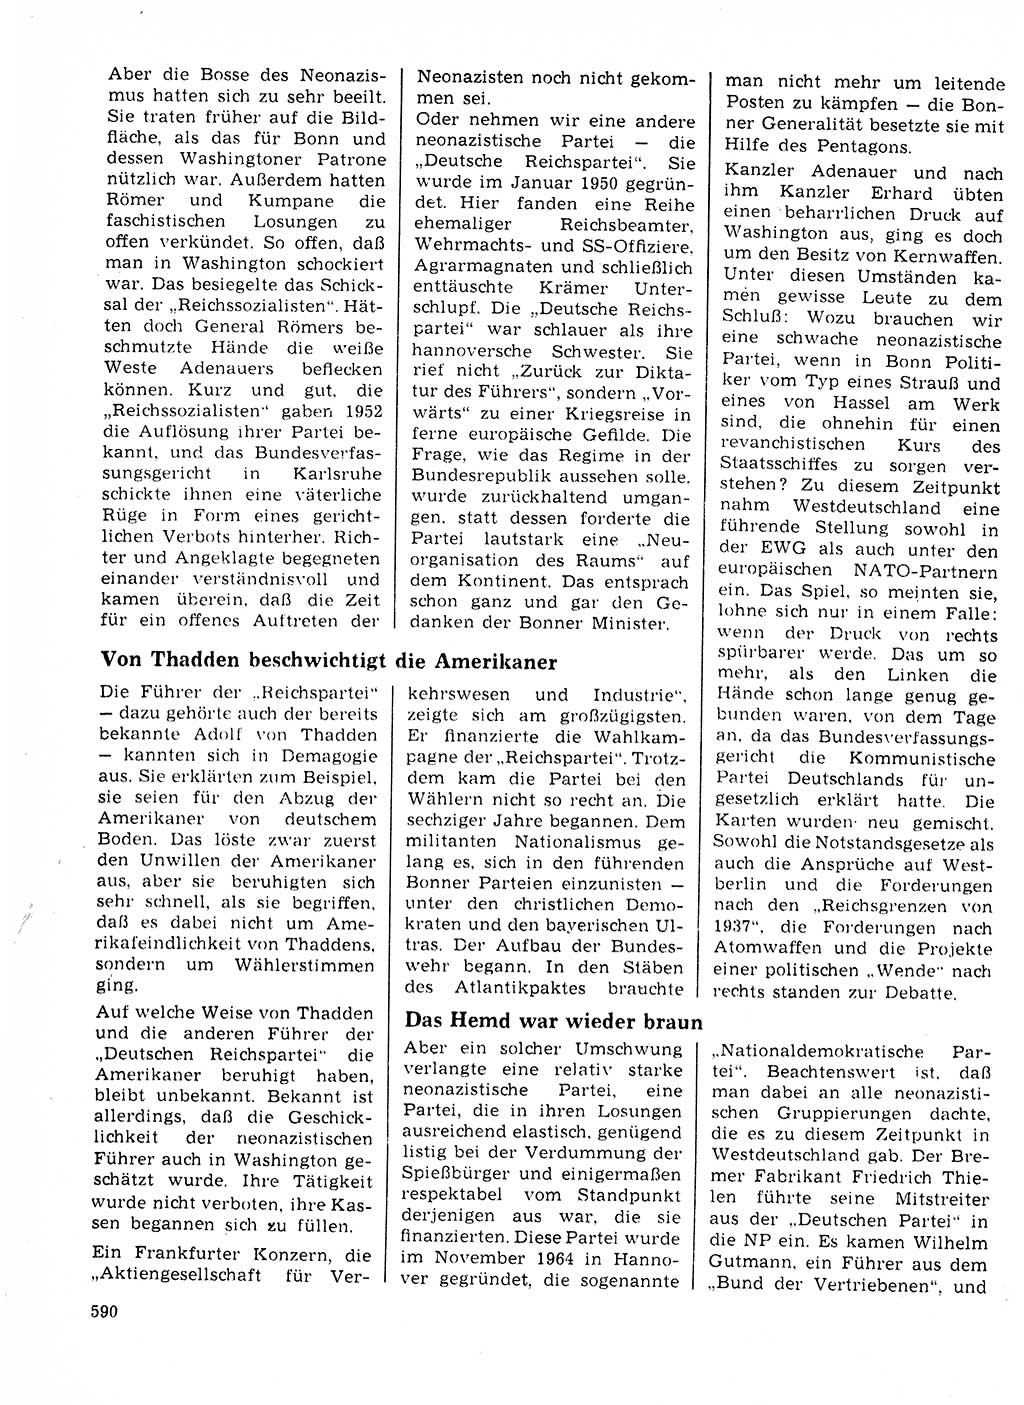 Neuer Weg (NW), Organ des Zentralkomitees (ZK) der SED (Sozialistische Einheitspartei Deutschlands) für Fragen des Parteilebens, 23. Jahrgang [Deutsche Demokratische Republik (DDR)] 1968, Seite 590 (NW ZK SED DDR 1968, S. 590)